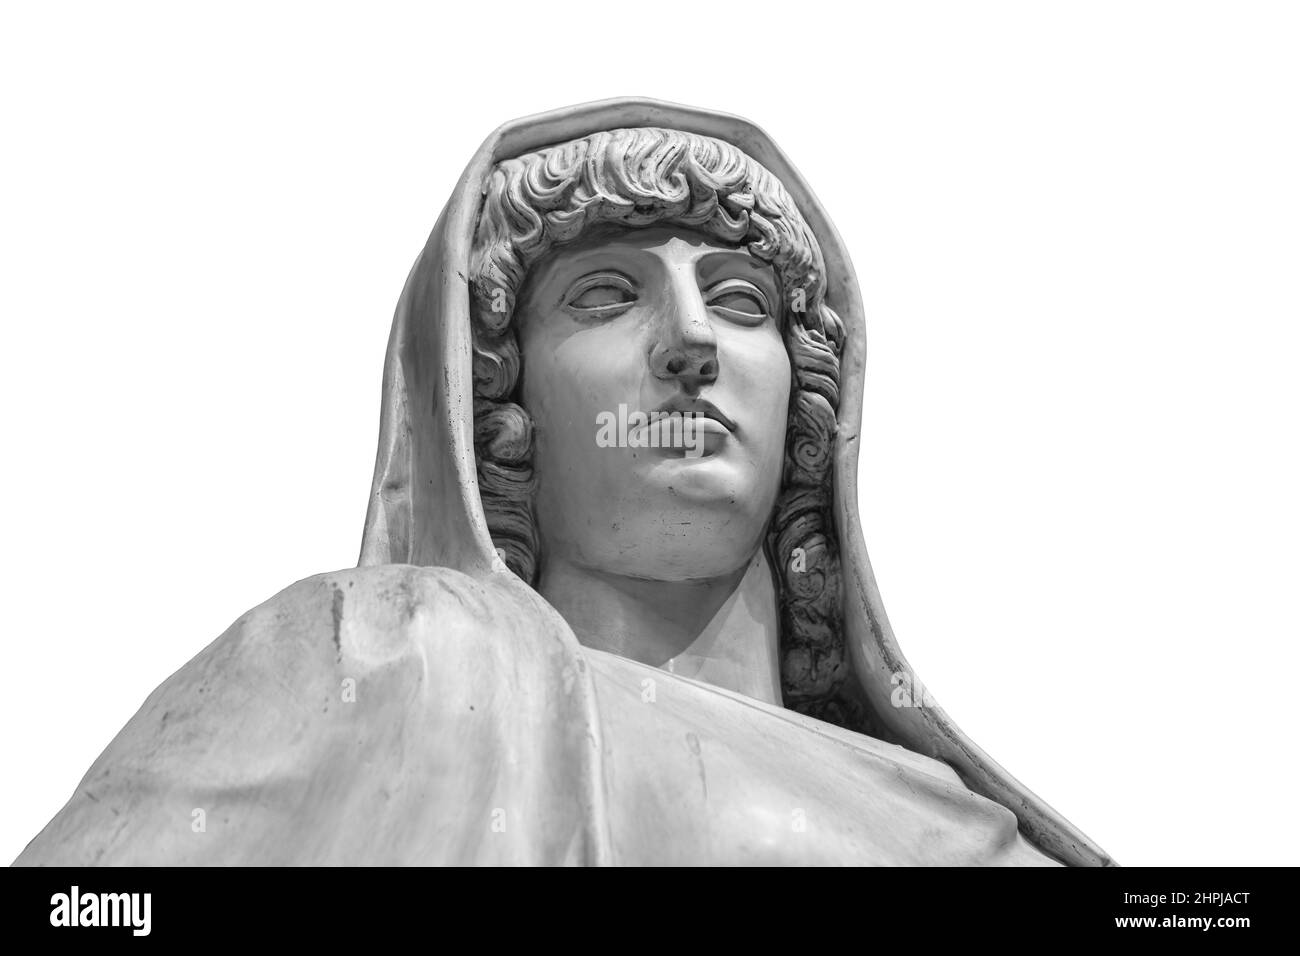 Vesta römische Göttin des Herdes, der Heimat und der Familie in der römischen Religion. Antike Büste isoliert auf einem weißen Hintergrund mit Beschneidungspfad Stockfoto